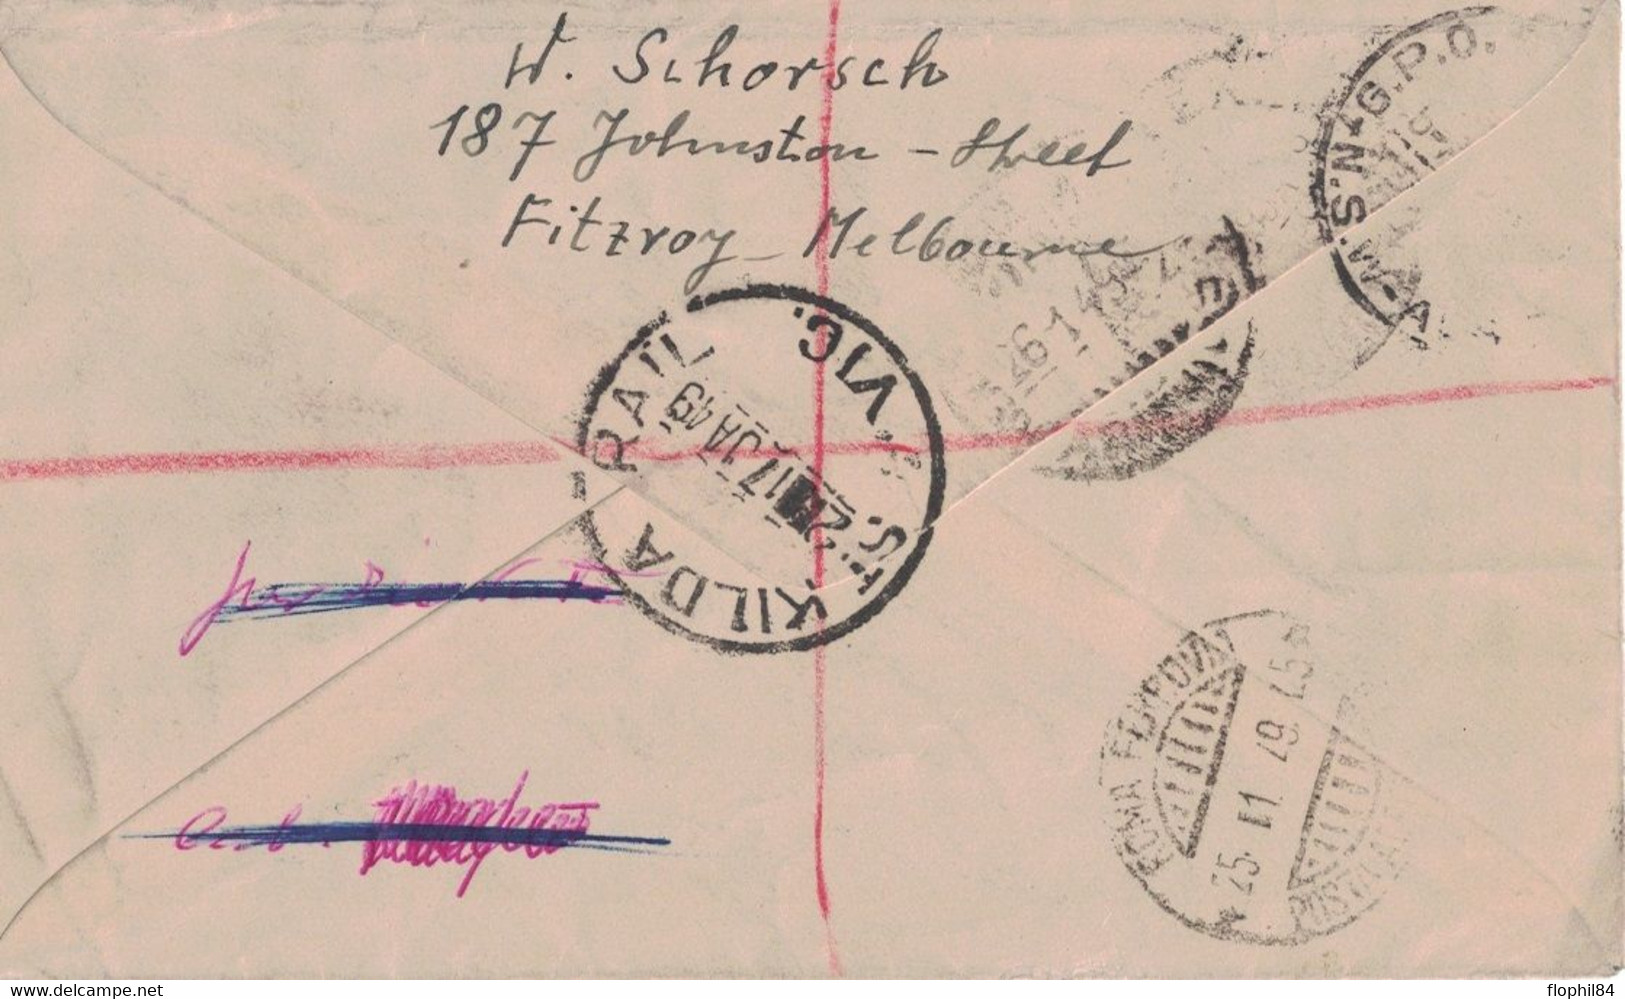 AUTRALIE - ST KILDA - LETTRE RECOMMANDEE PAR AVION POUR LA LLOYD TRIESTINO EN ITALIE - LE 17 JANVIER 1949 - DECHIRURE D' - Postmark Collection